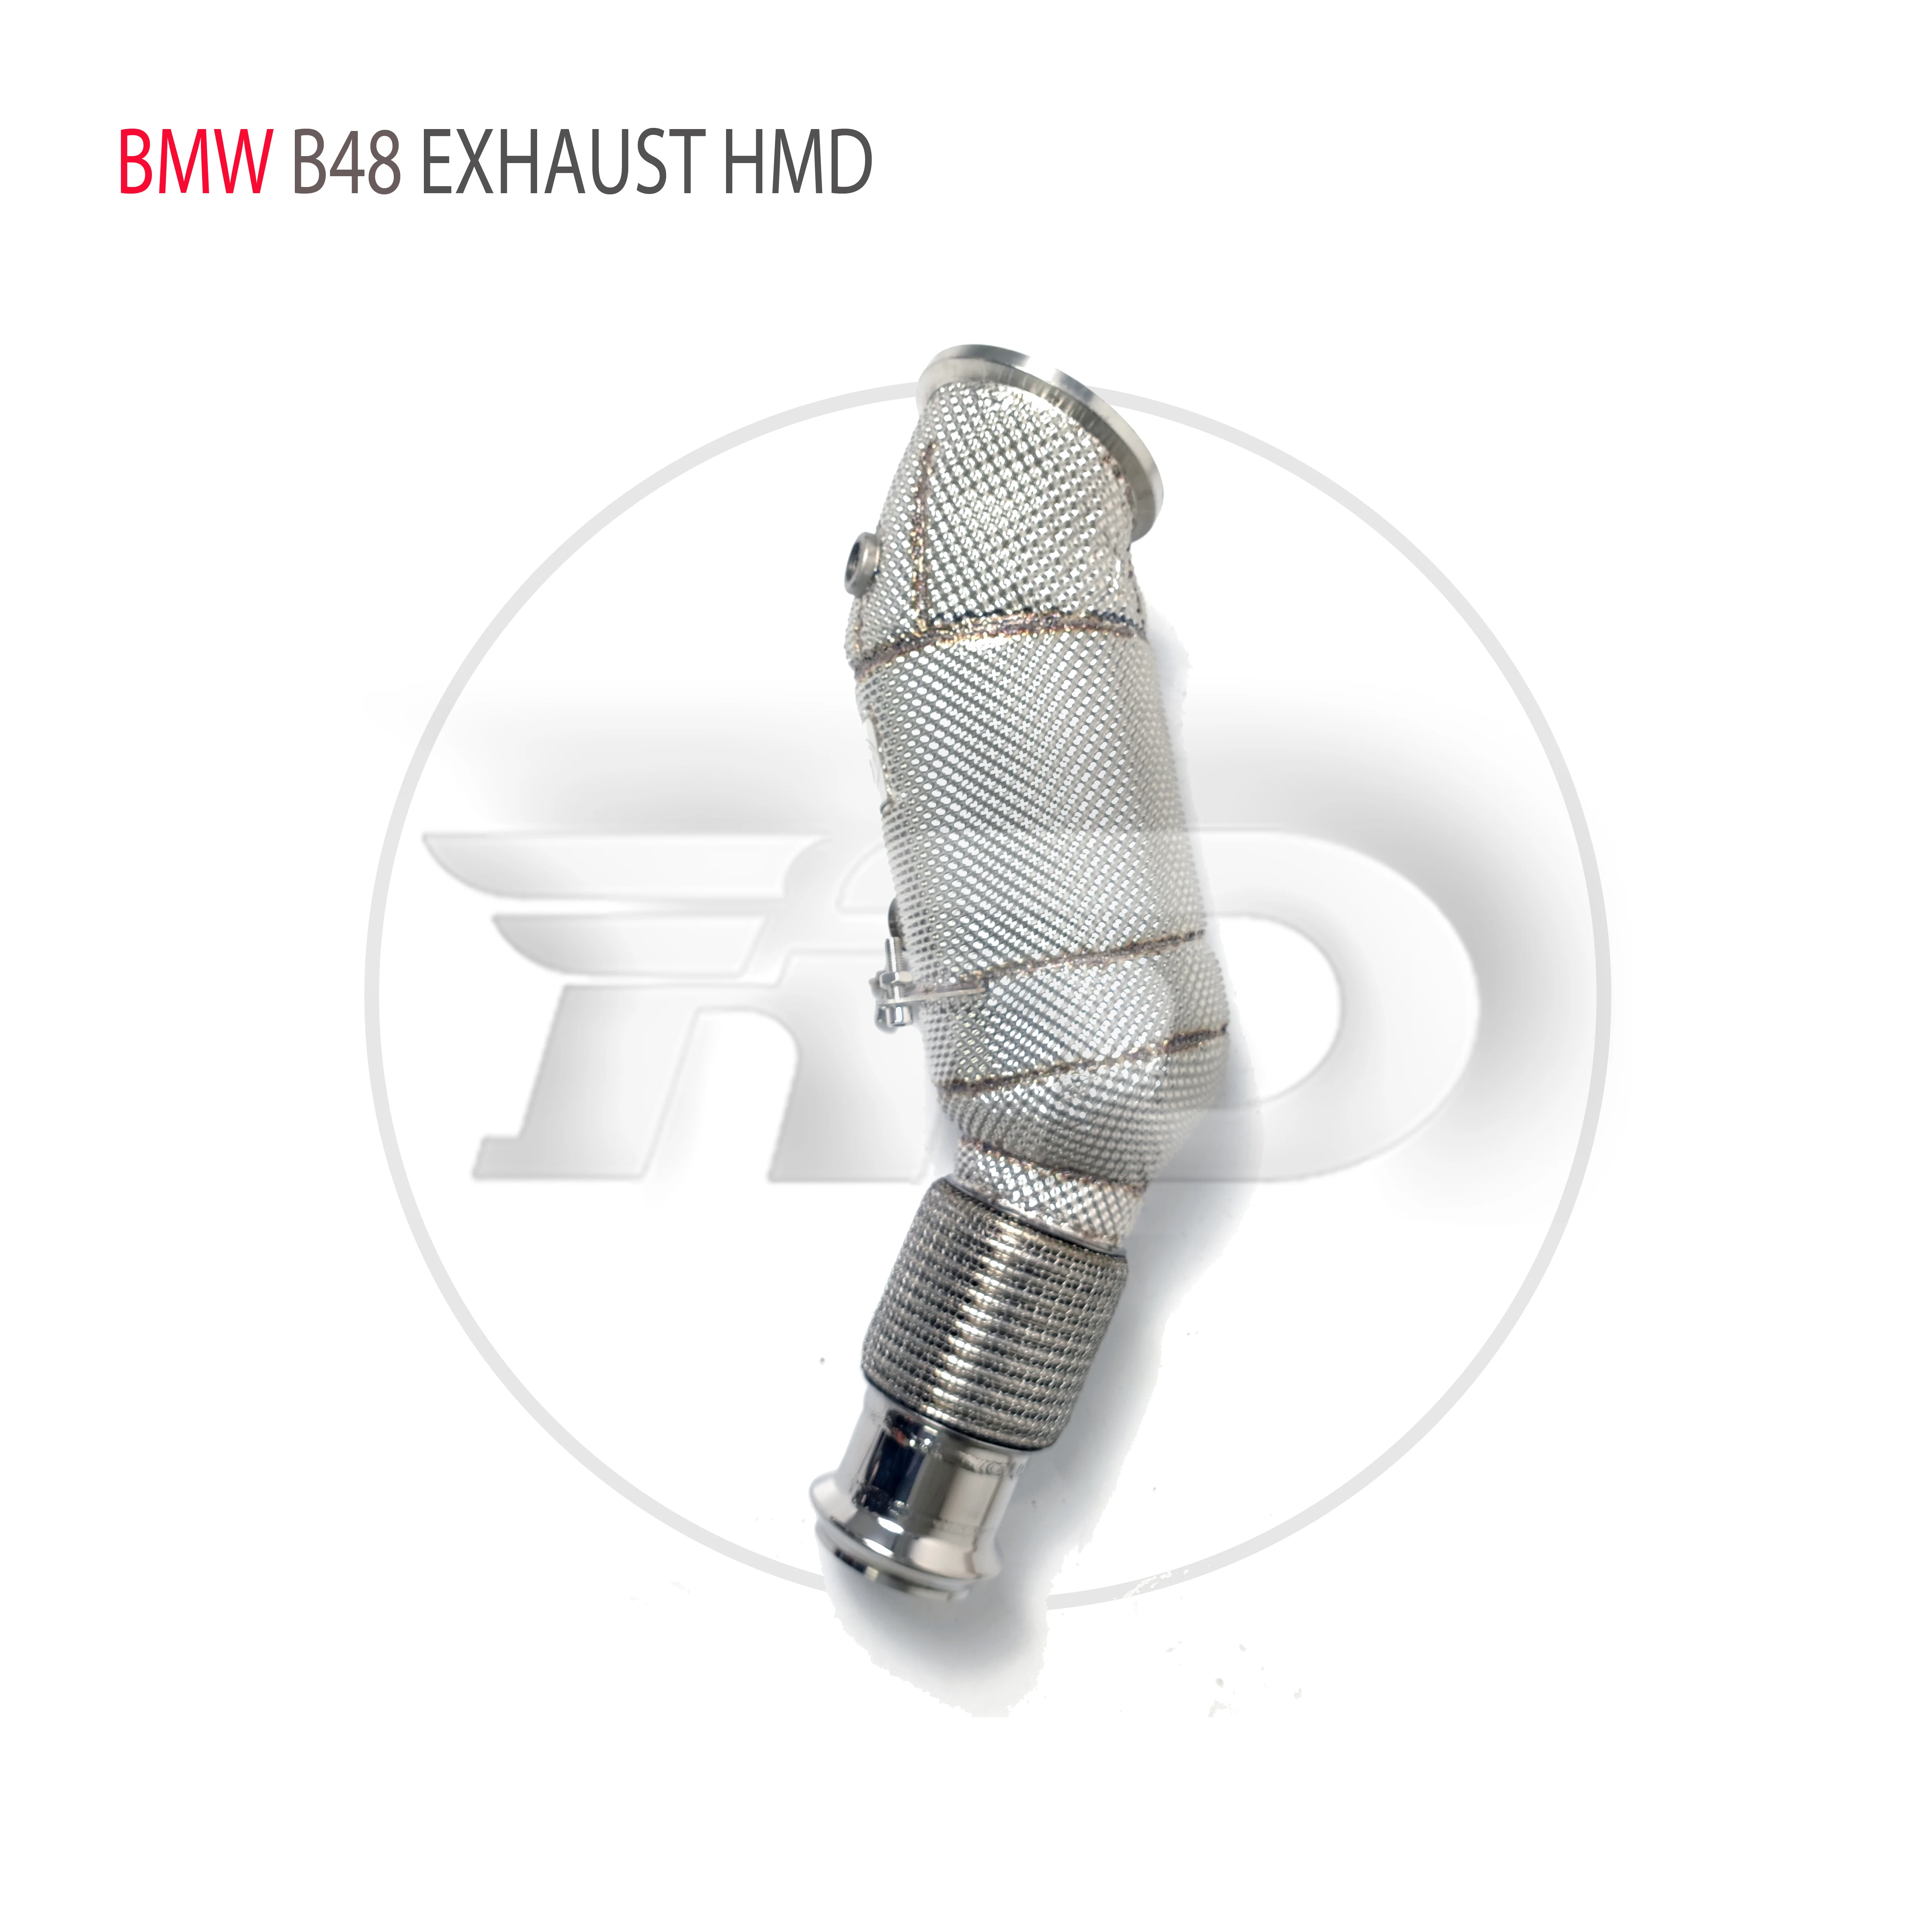 

HMD выхлопная система, высокая производительность потока, канальная труба для BMW 525i 530i B48 двигатель 2,0 T, автомобильные аксессуары с Cat-трубкой